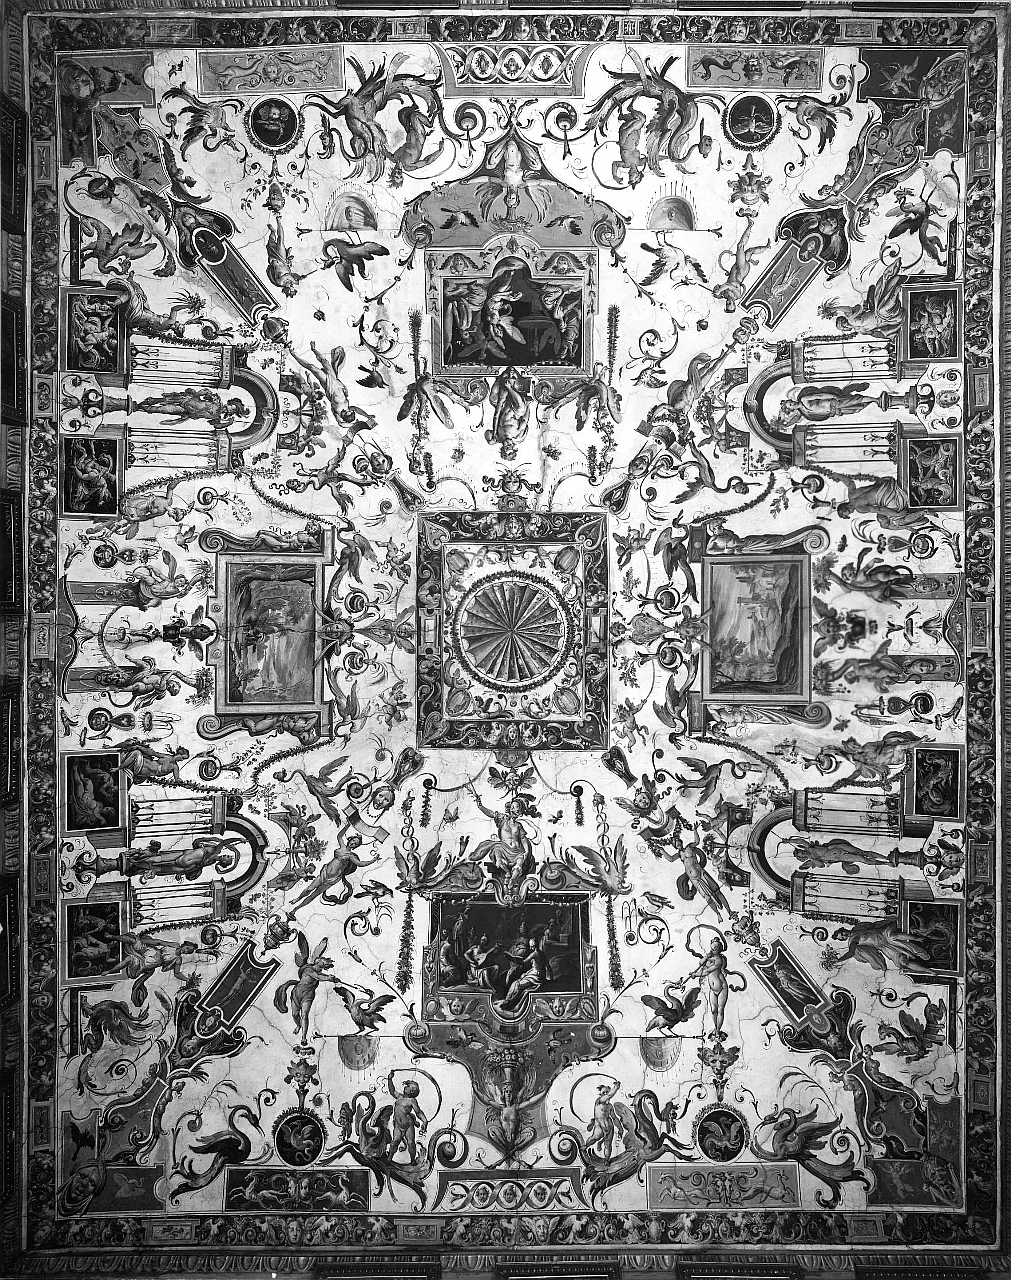 motivi decorativi a grottesche con scene di paesaggi e figure mitologiche (soffitto dipinto) di Tempesta Antonio (attribuito) (sec. XVI)